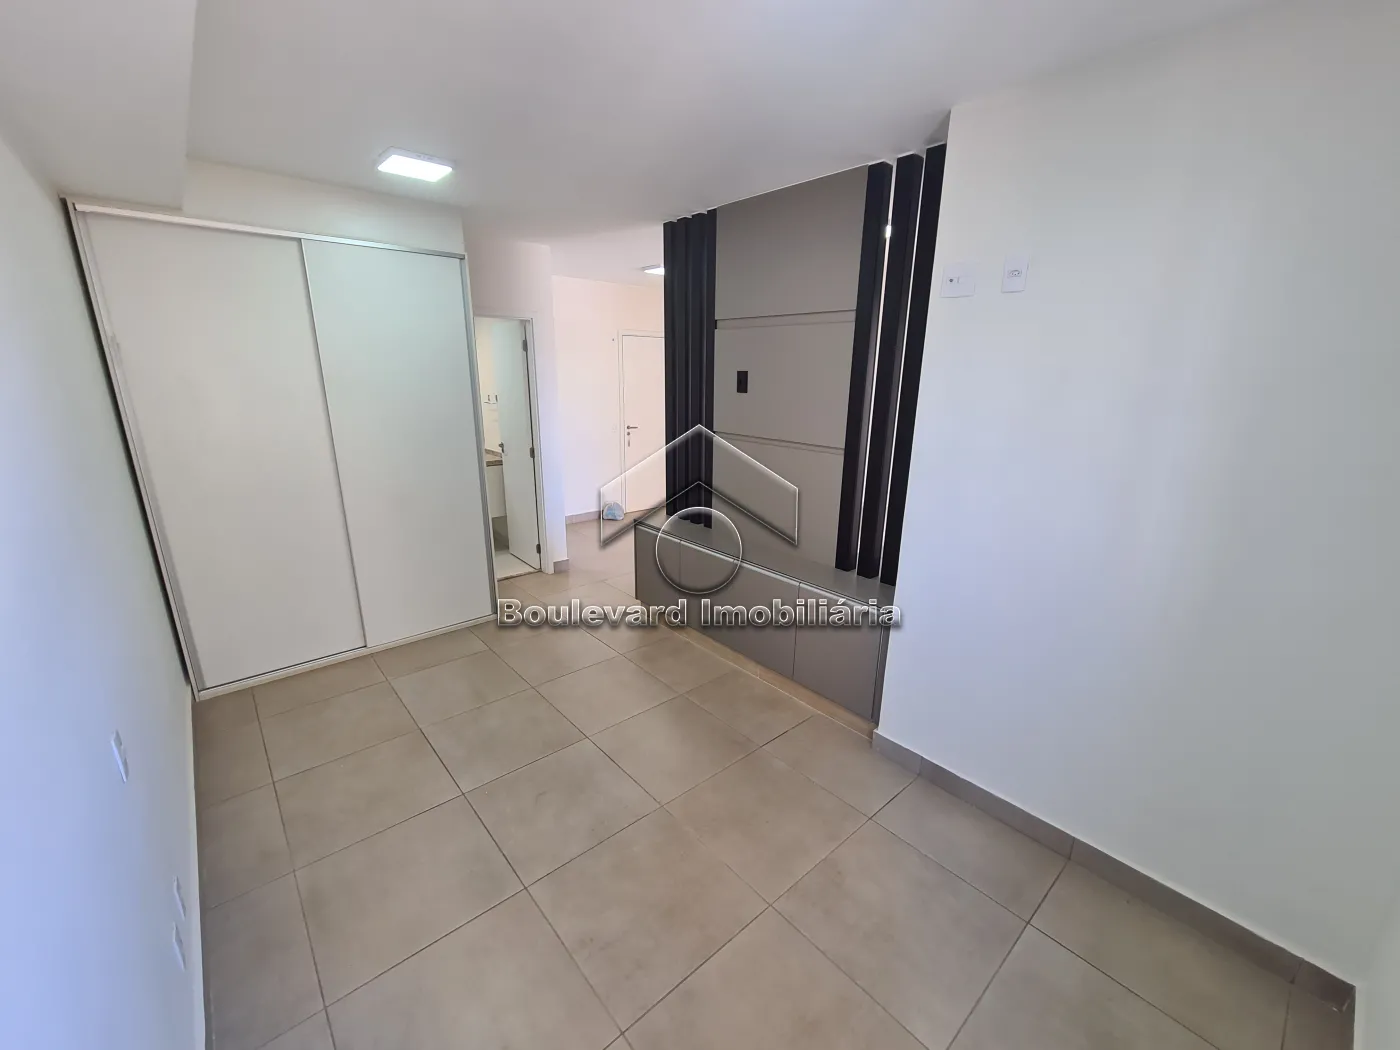 Alugar Apartamento / Padrão em Ribeirão Preto R$ 1.950,00 - Foto 6